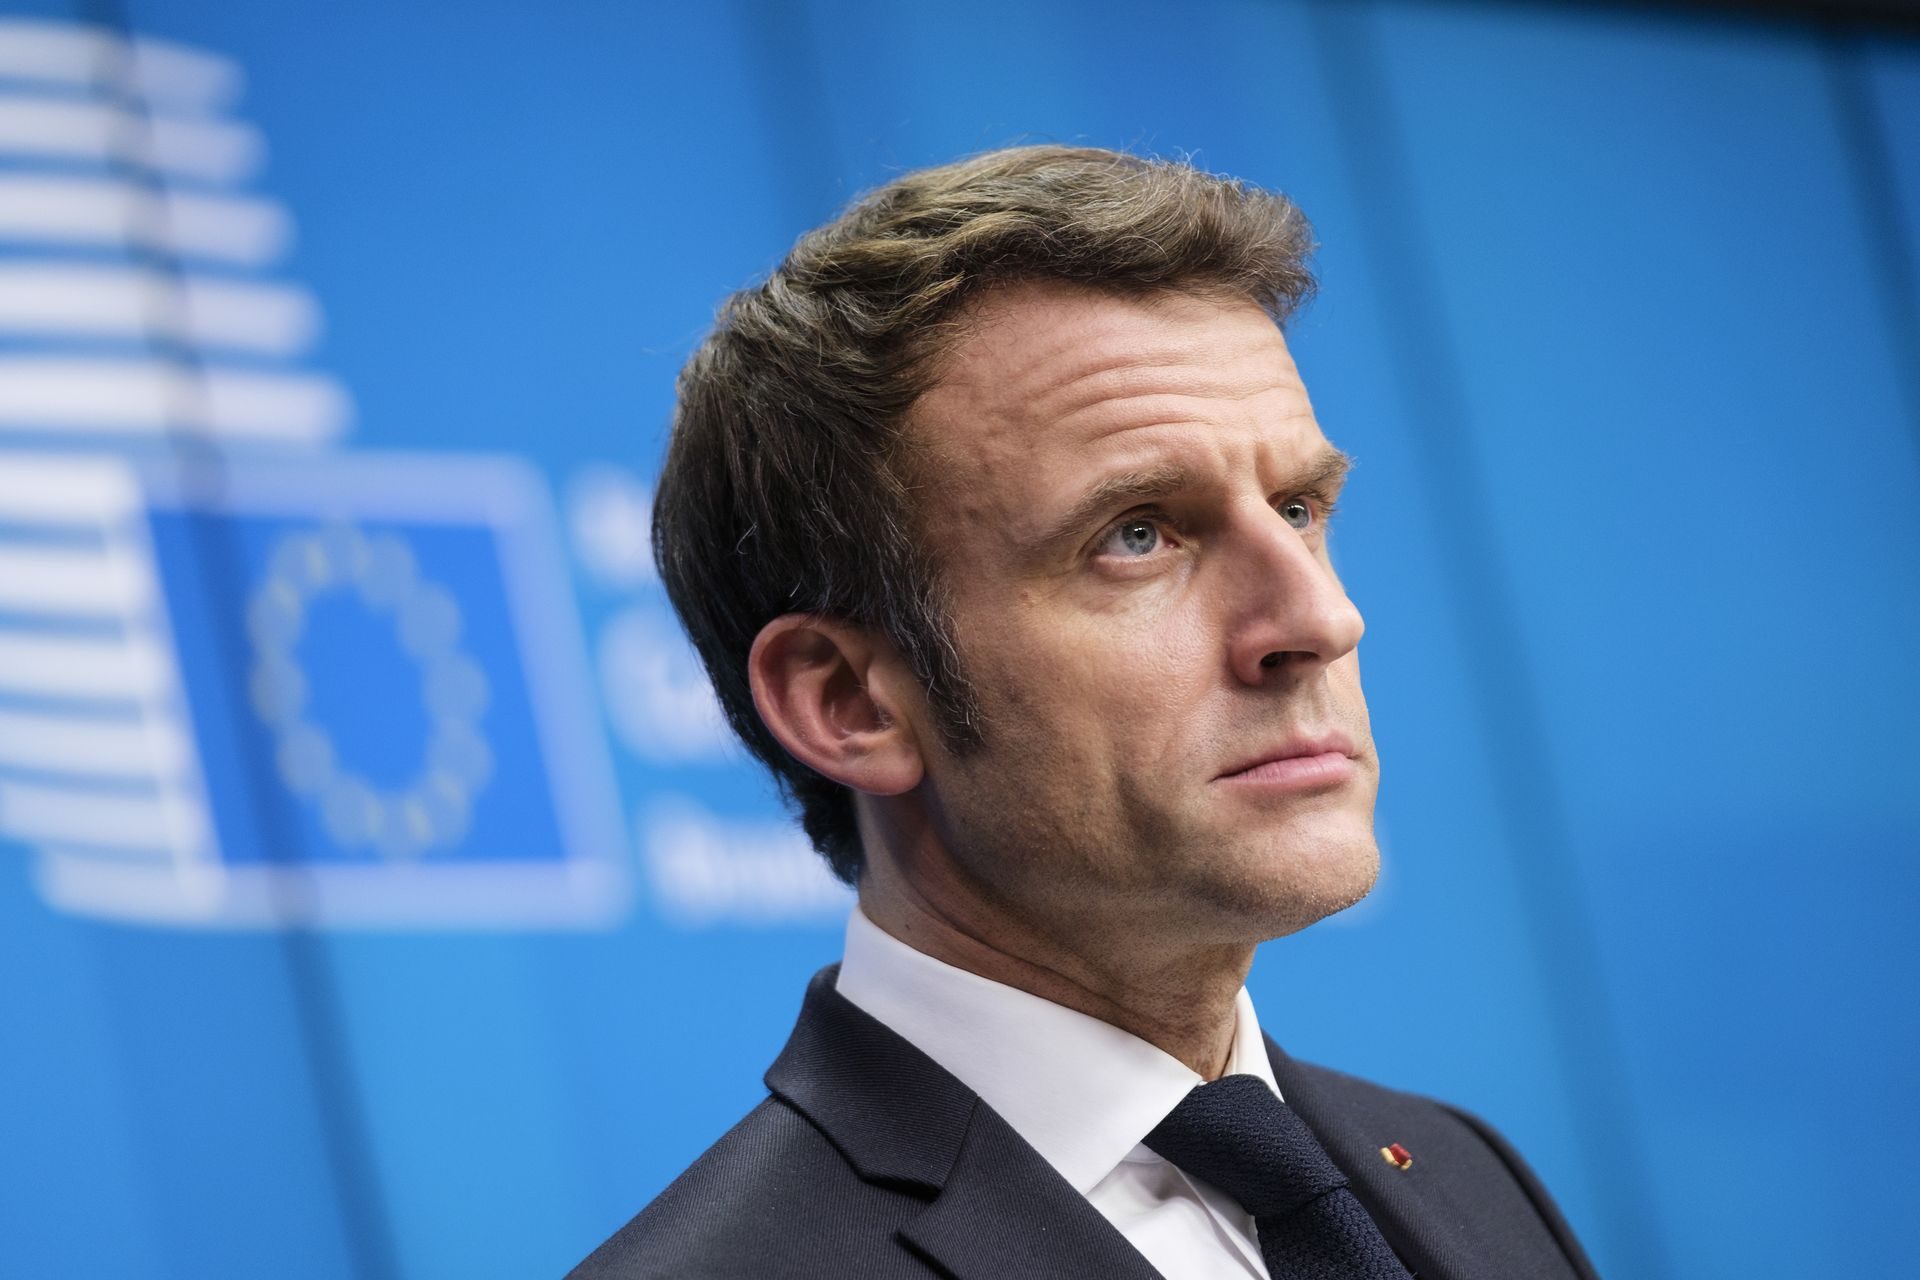 Macron defiende que los jóvenes sirvan durante unos meses a la patria